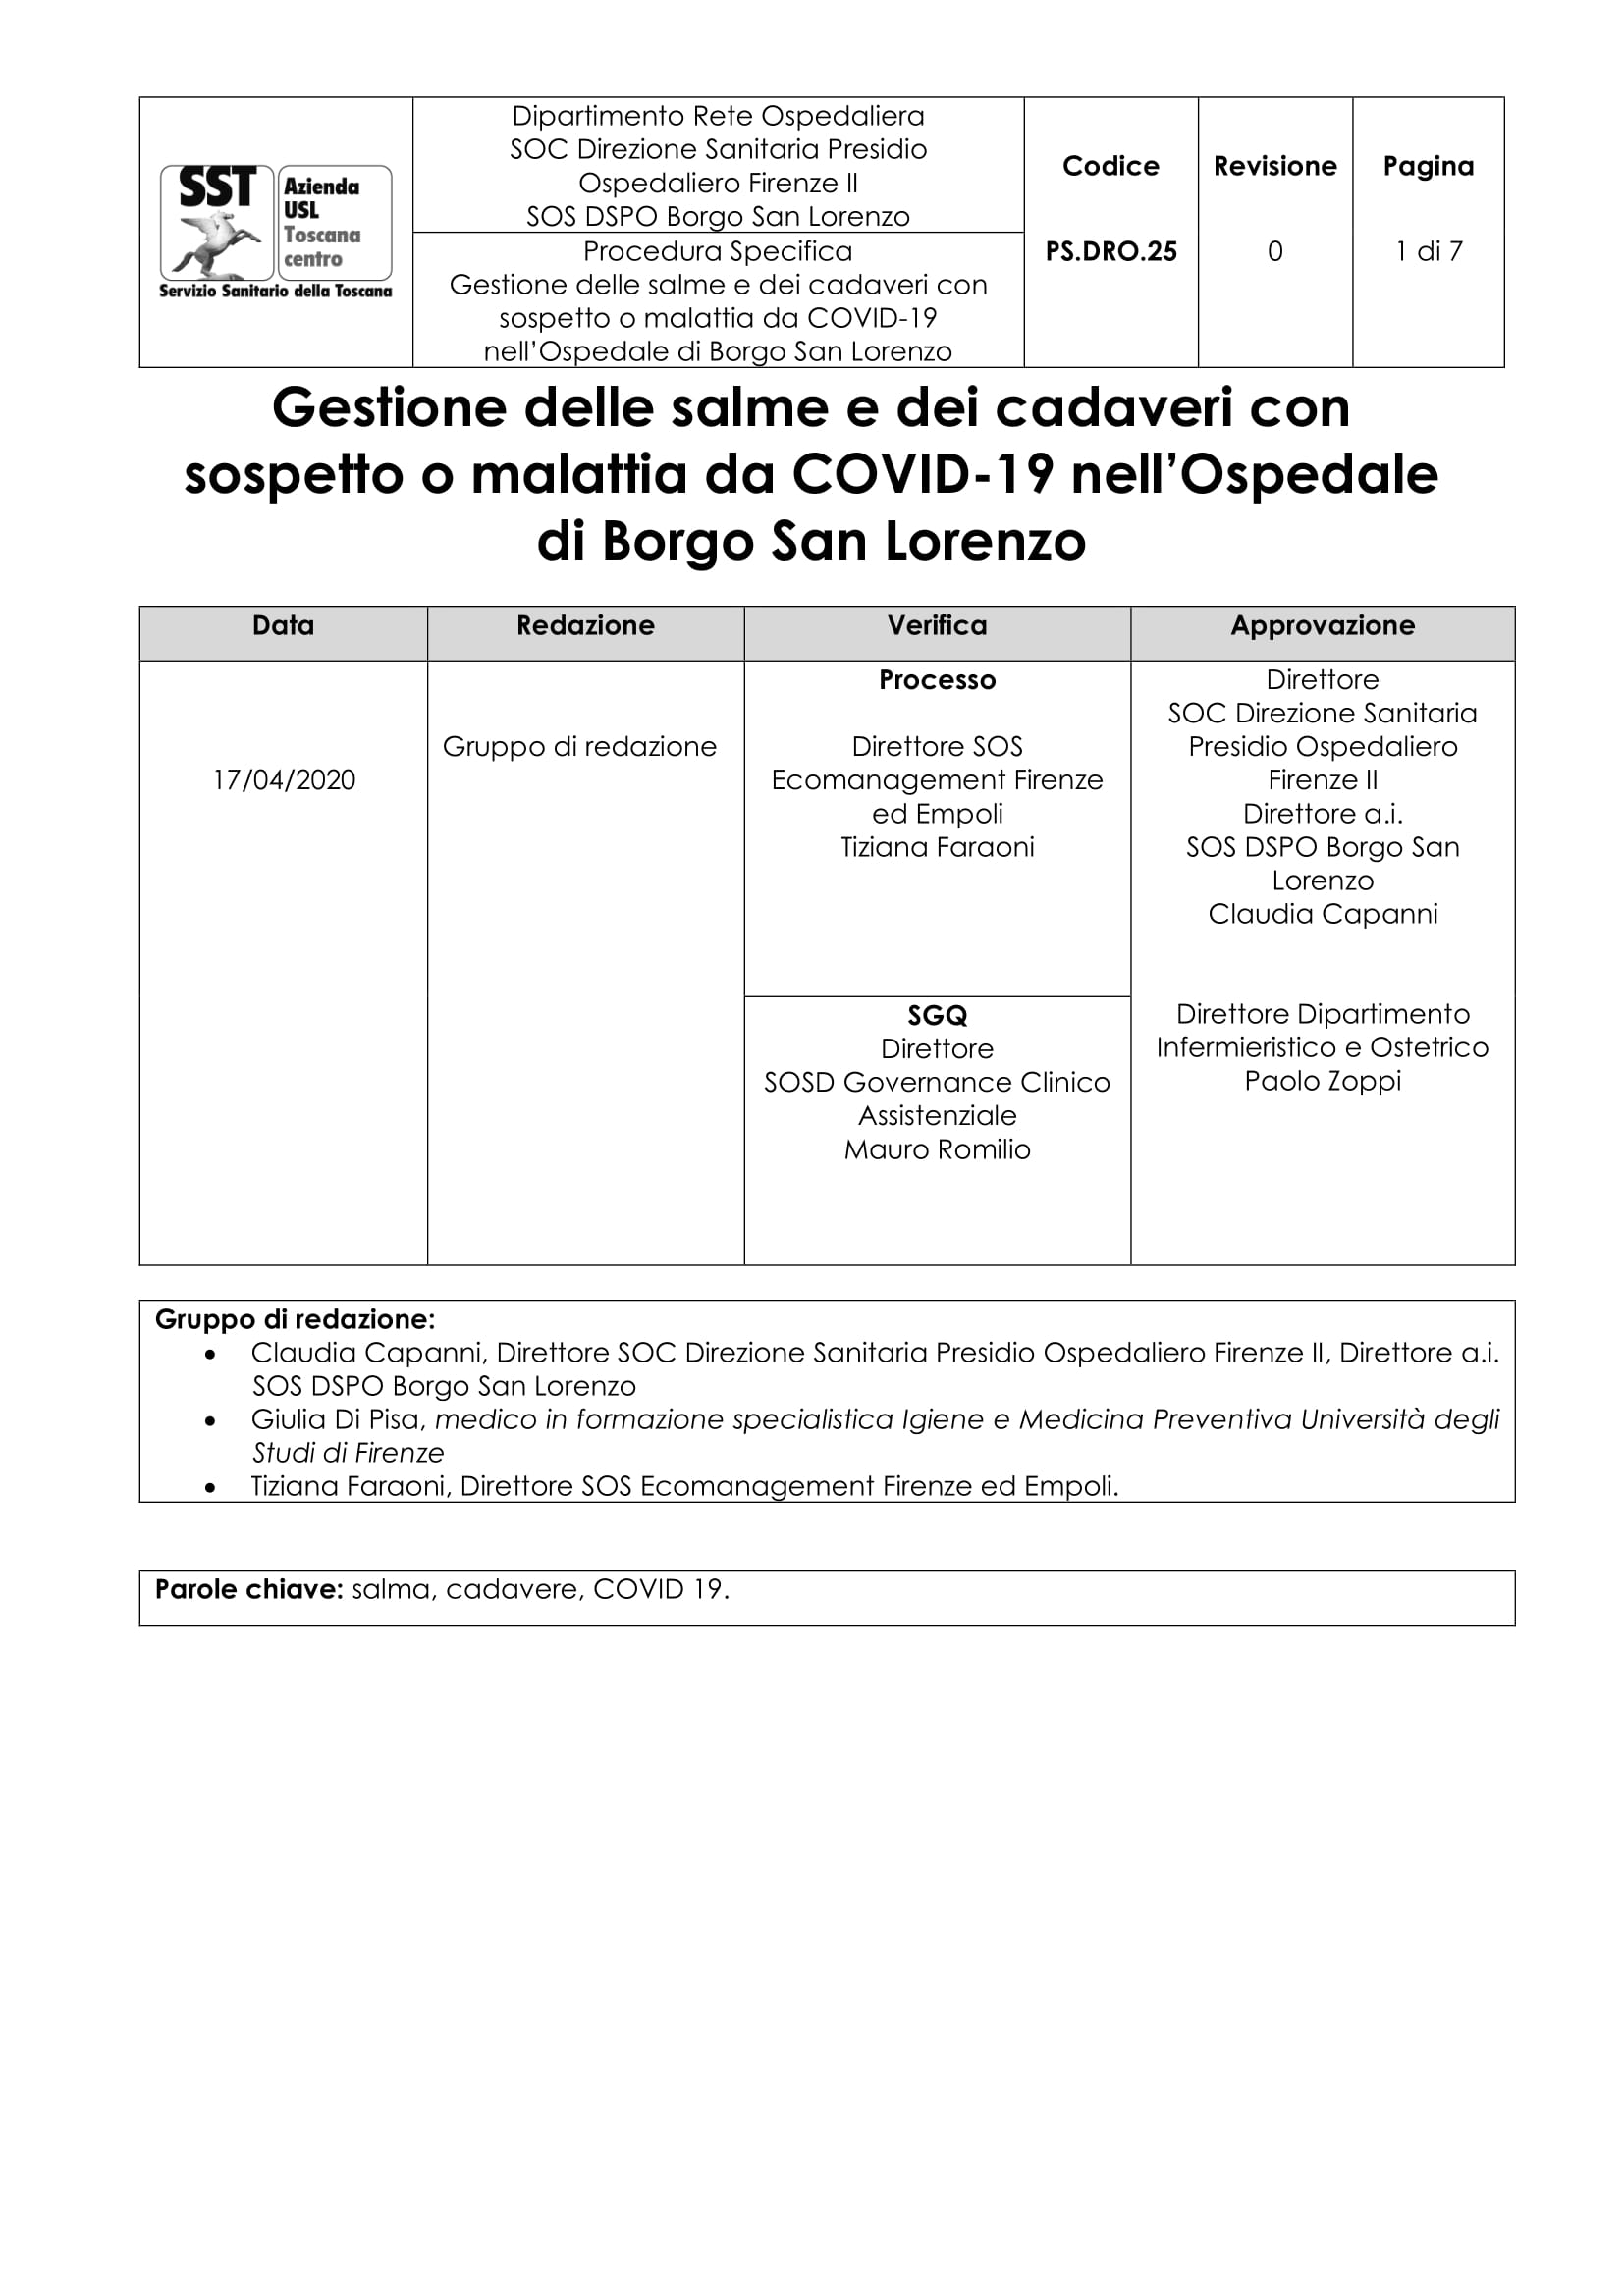 PS.DRO.25 Gestione delle salme e dei cadaveri con sospetto o malattia da COVID-19 nell’Ospedale di Borgo San Lorenzo